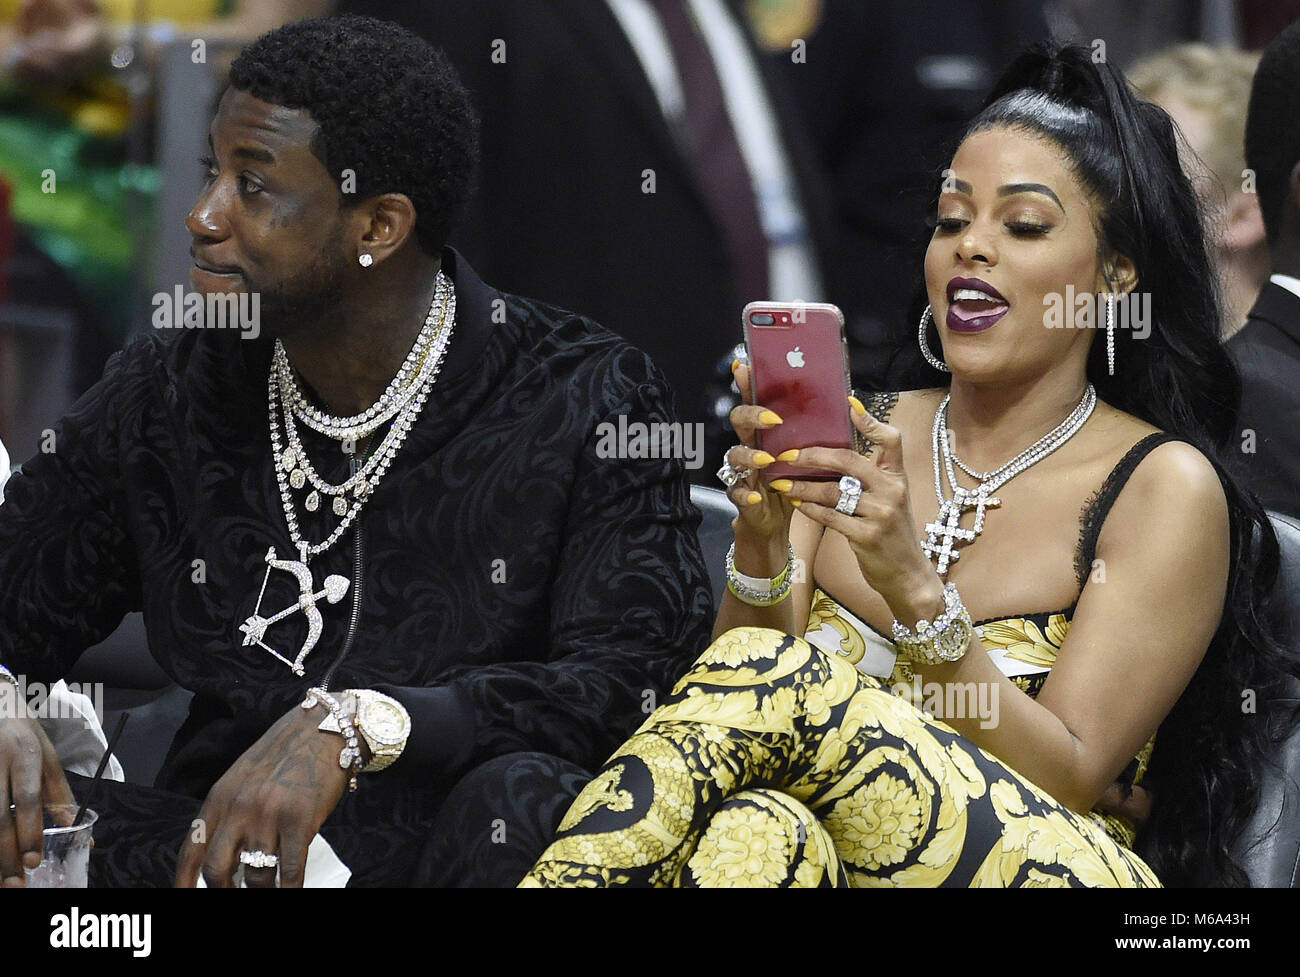 Miami, FL, EEUU. 01 Mar, 2018. Rapero Gucci Mane y su esposa Keyshia Ka'oir  ver Los Angeles Lakers contra el calor de Miami en un partido de la NBA en  el AmericanAirlines